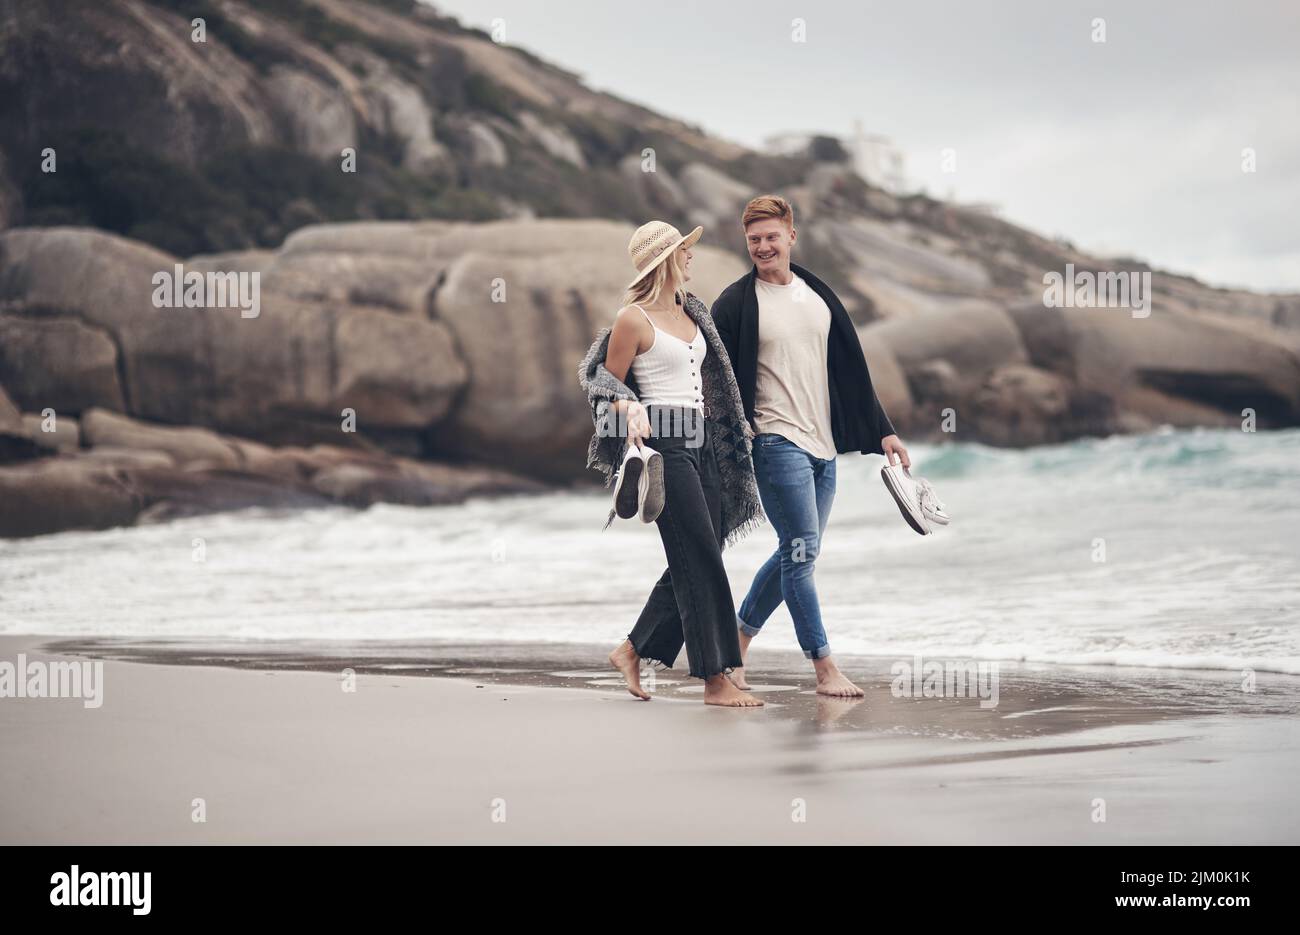 Wir konnten stundenlang nur am Strand spazieren gehen, ein Paar hielt sich die Hände beim Strandspaziergang. Stockfoto